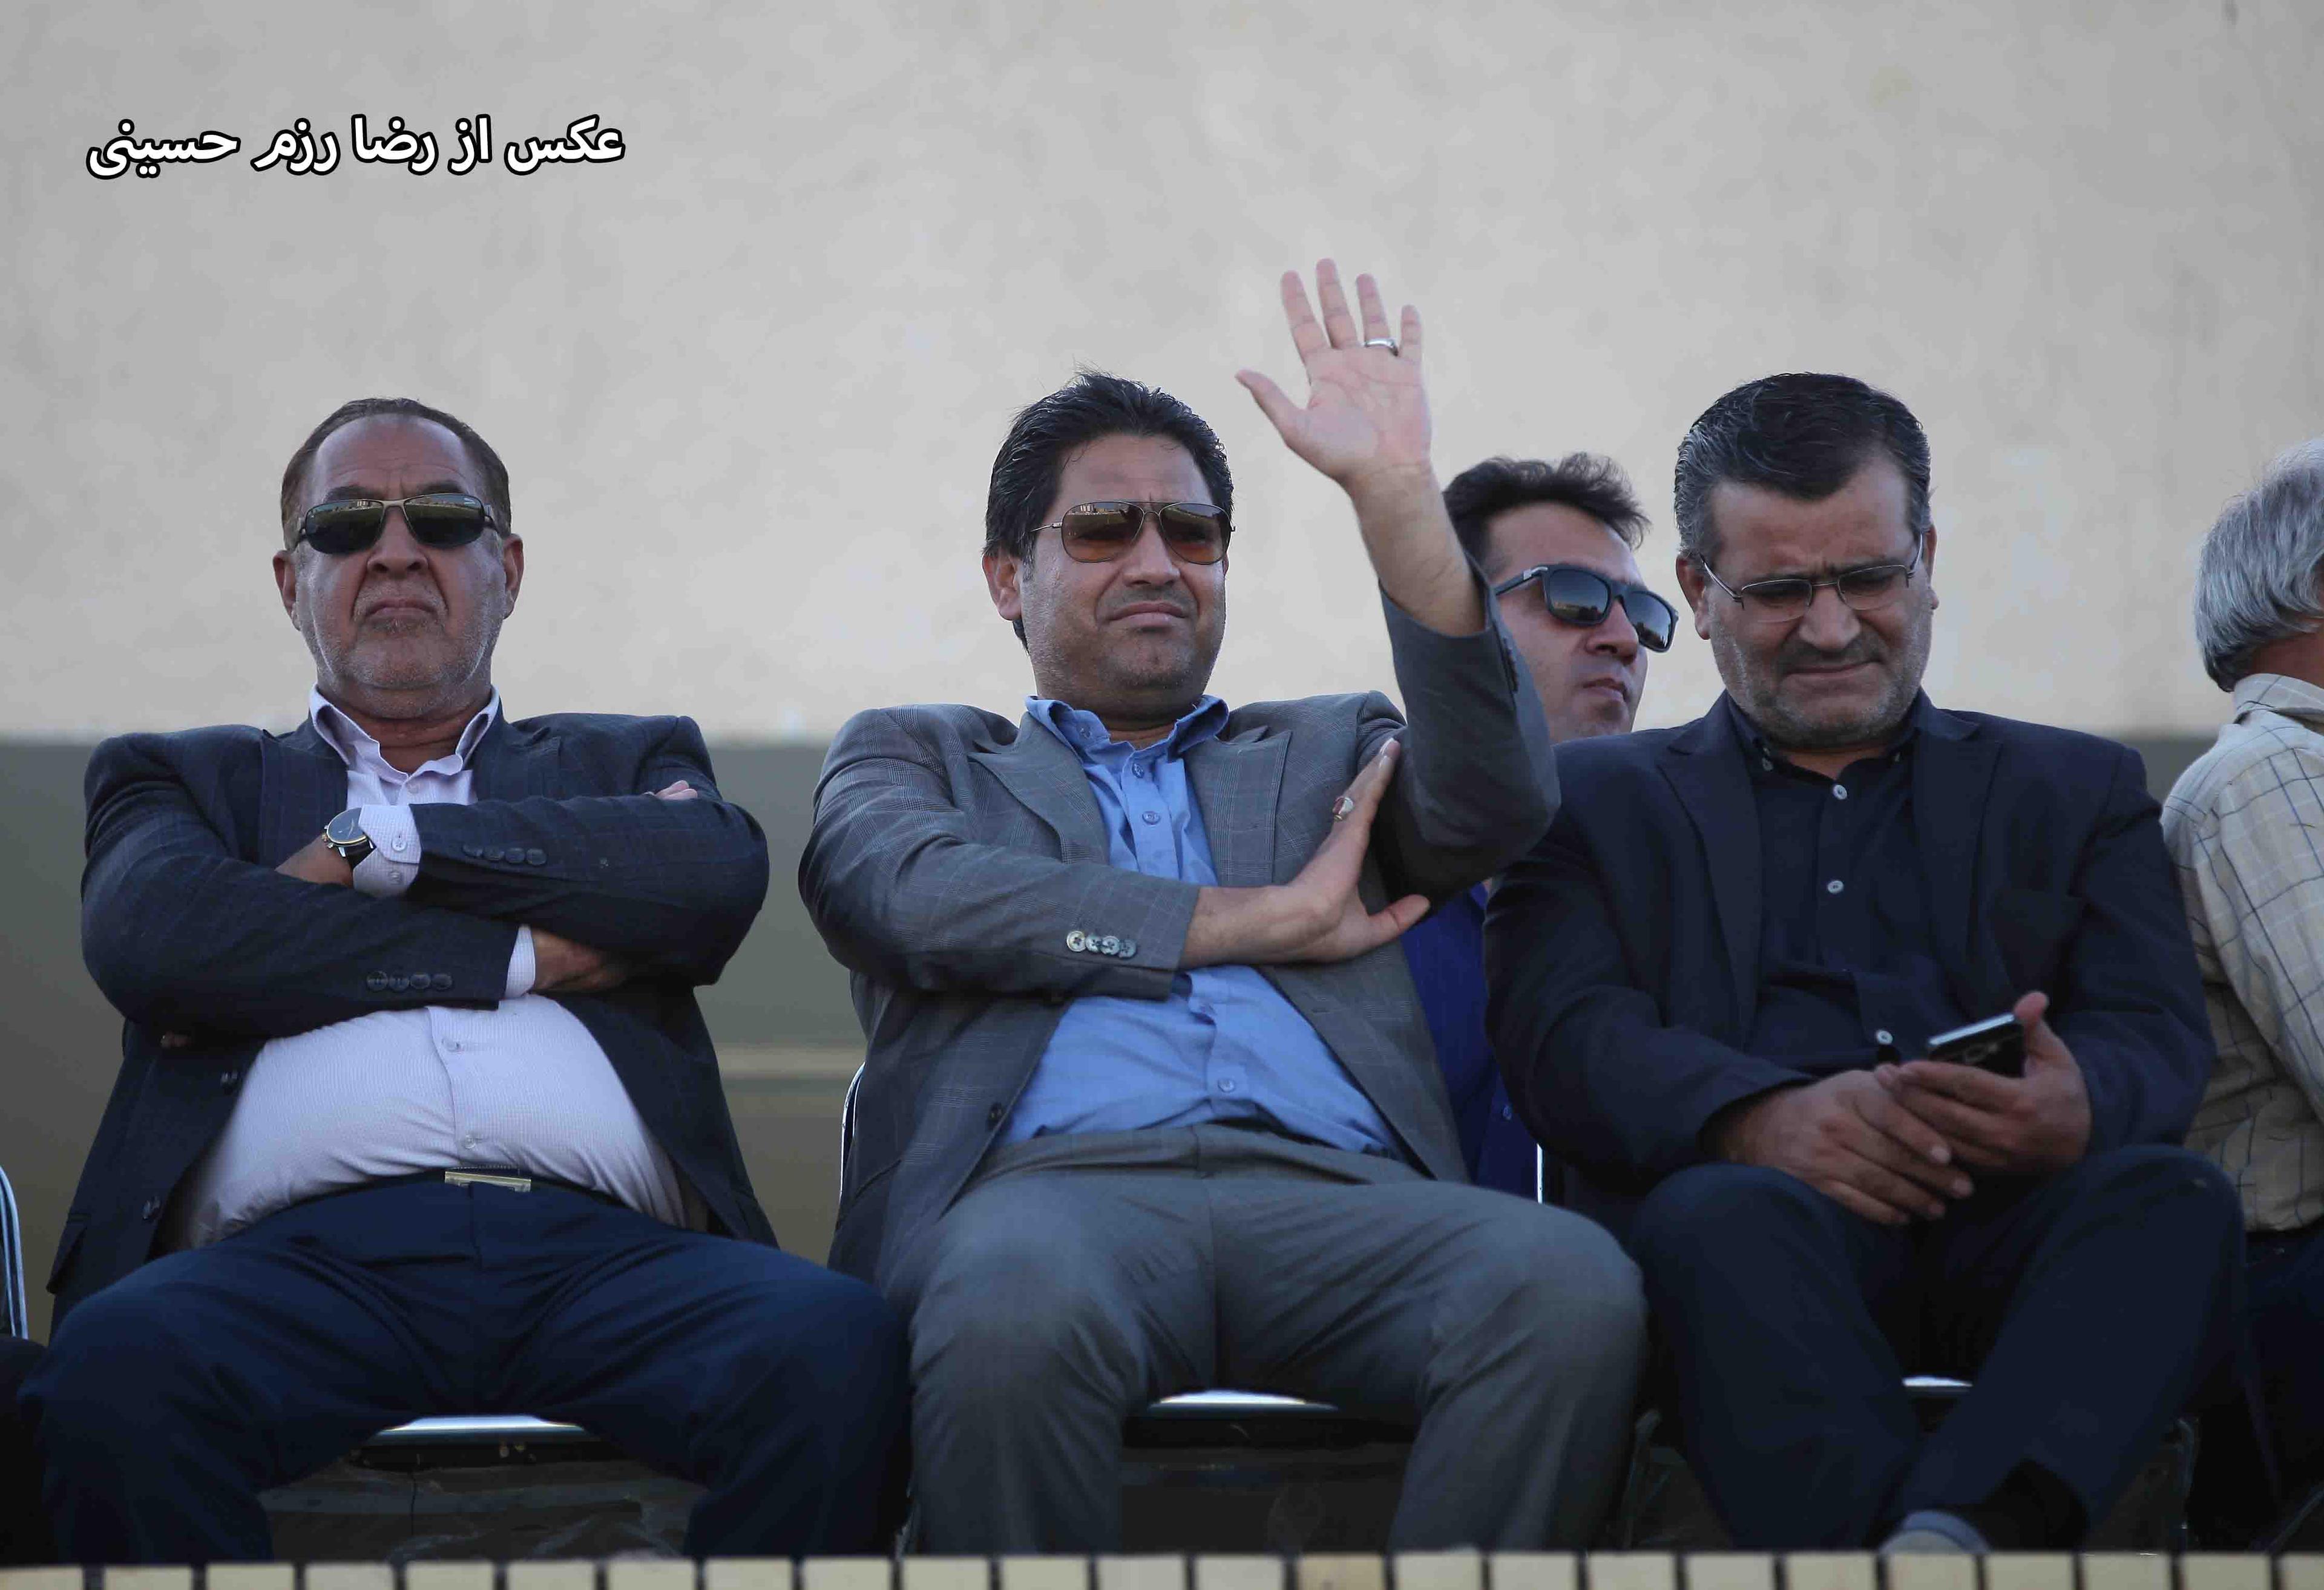 علی قرایی: بی صبرانه منتظر حضور پرشور هواداران در بازی با اکسین البرز در روز جمعه هستیم